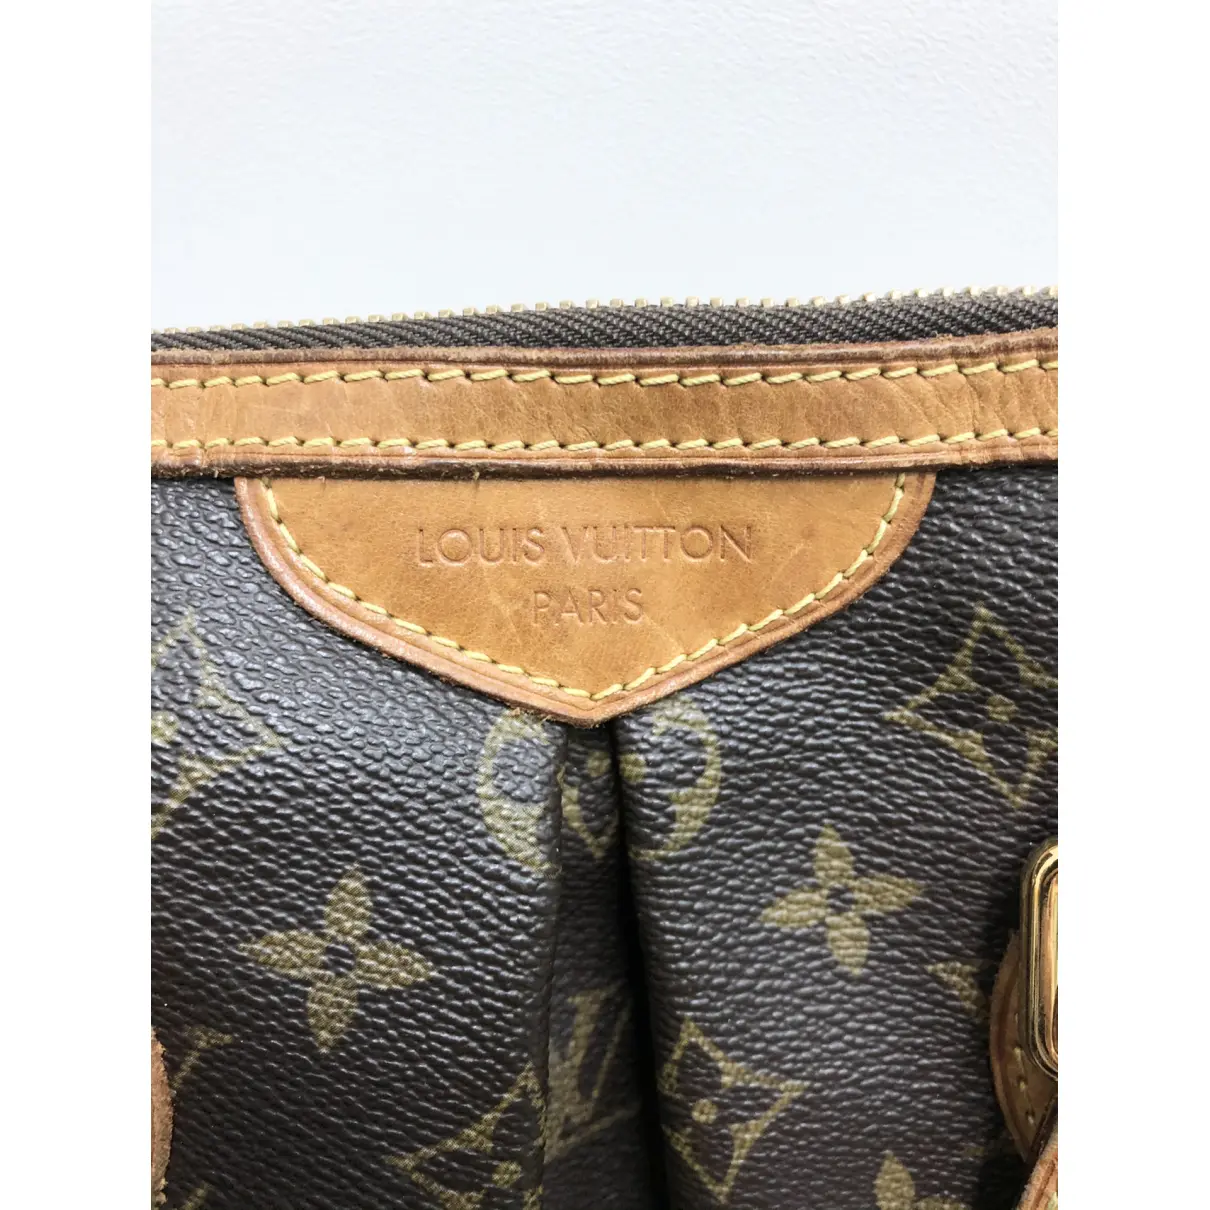 Buy Louis Vuitton Palermo cloth handbag online